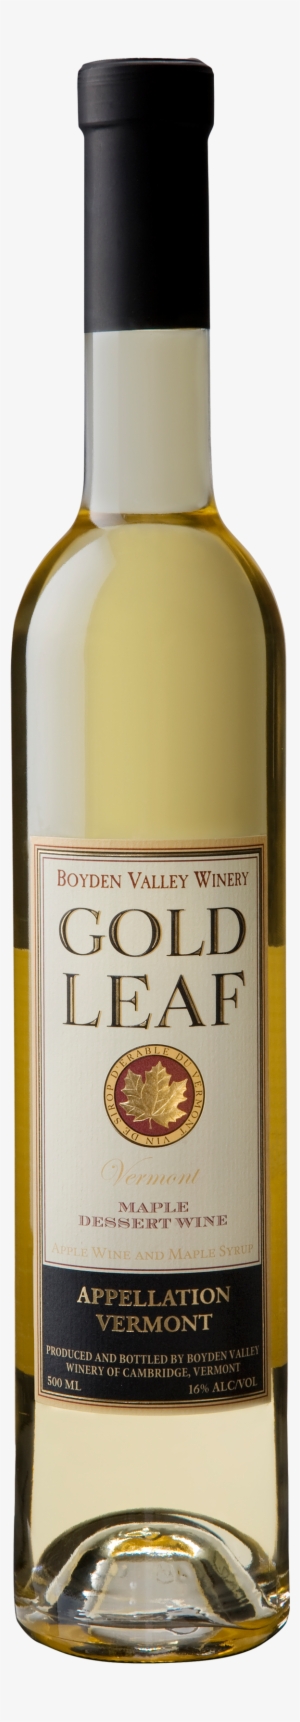 Gold Leaf - Golden Leaf Wine